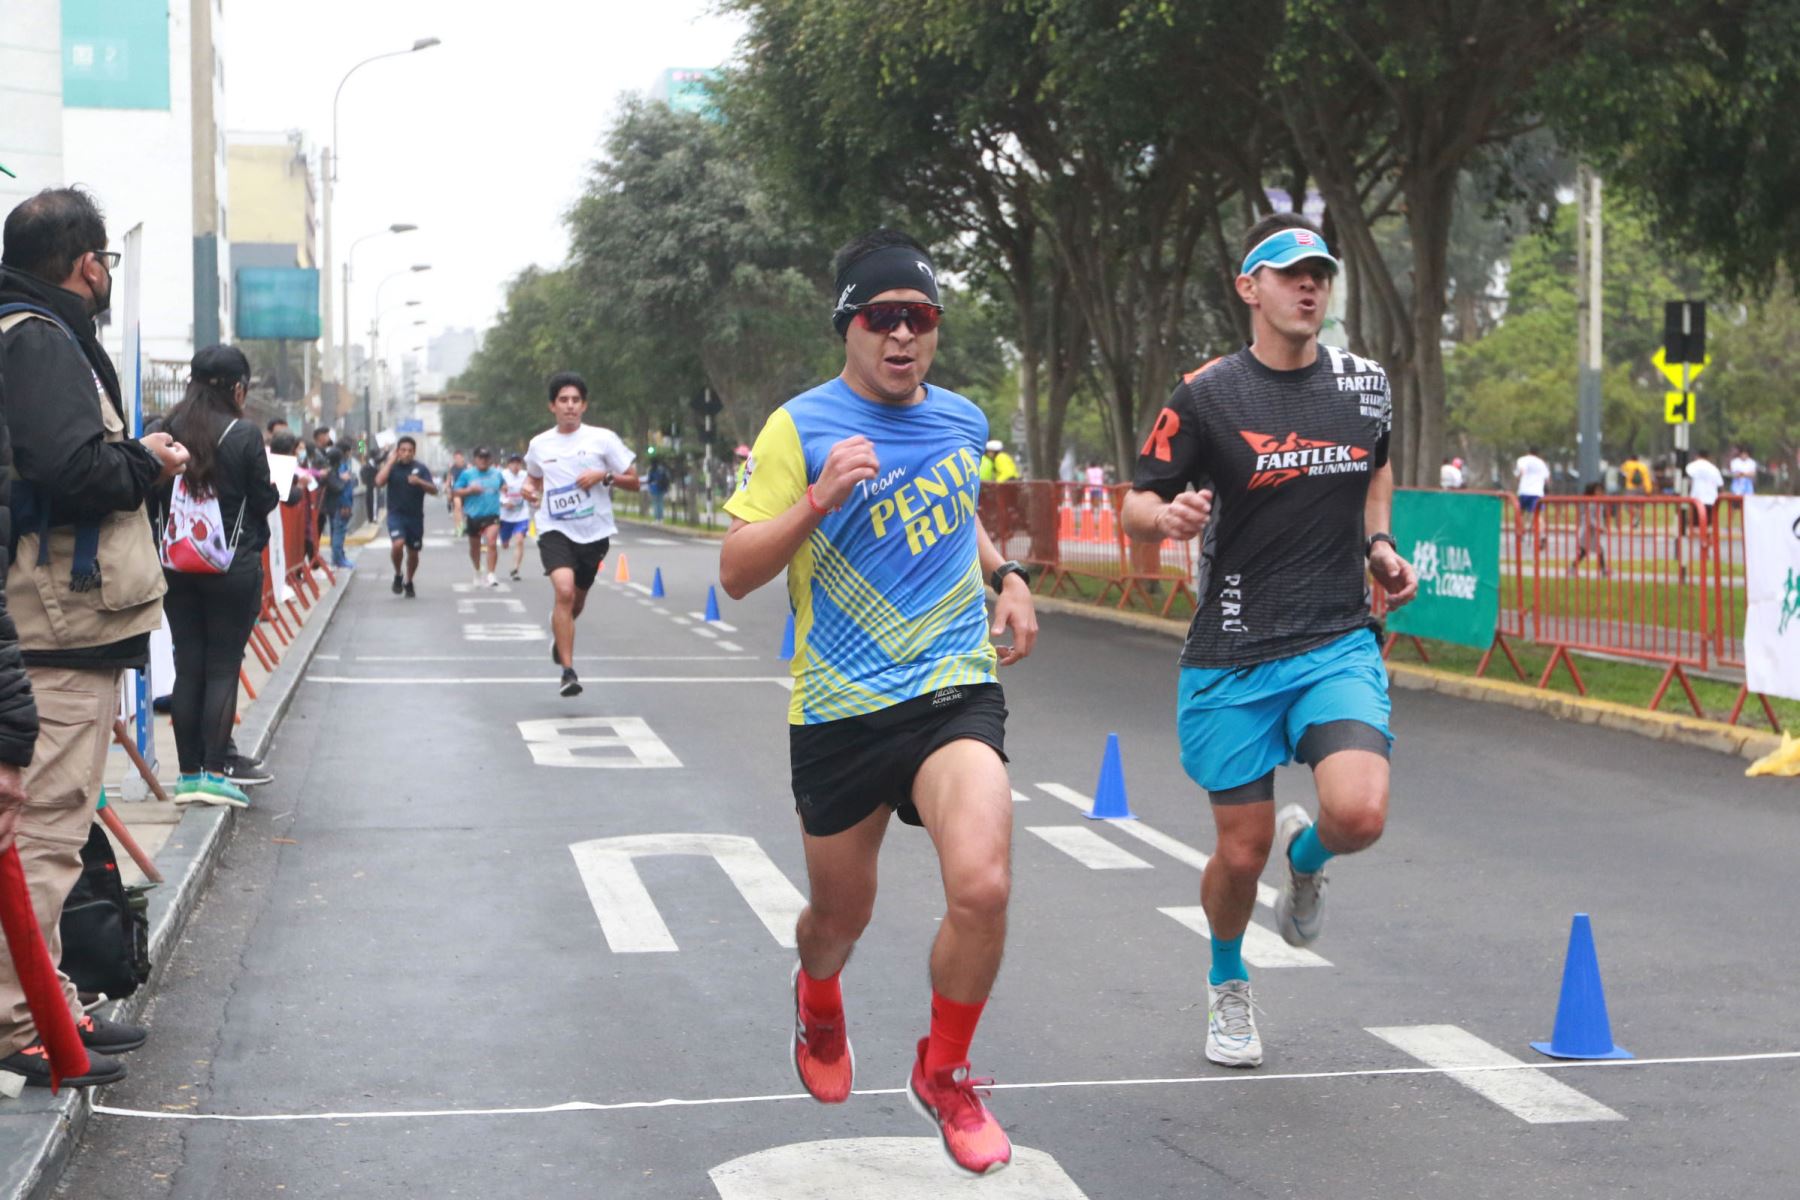 En la carrera se espera la participación de 1500 personas de 18 a 75 años. Foto: ANDINA/Héctor Vinces